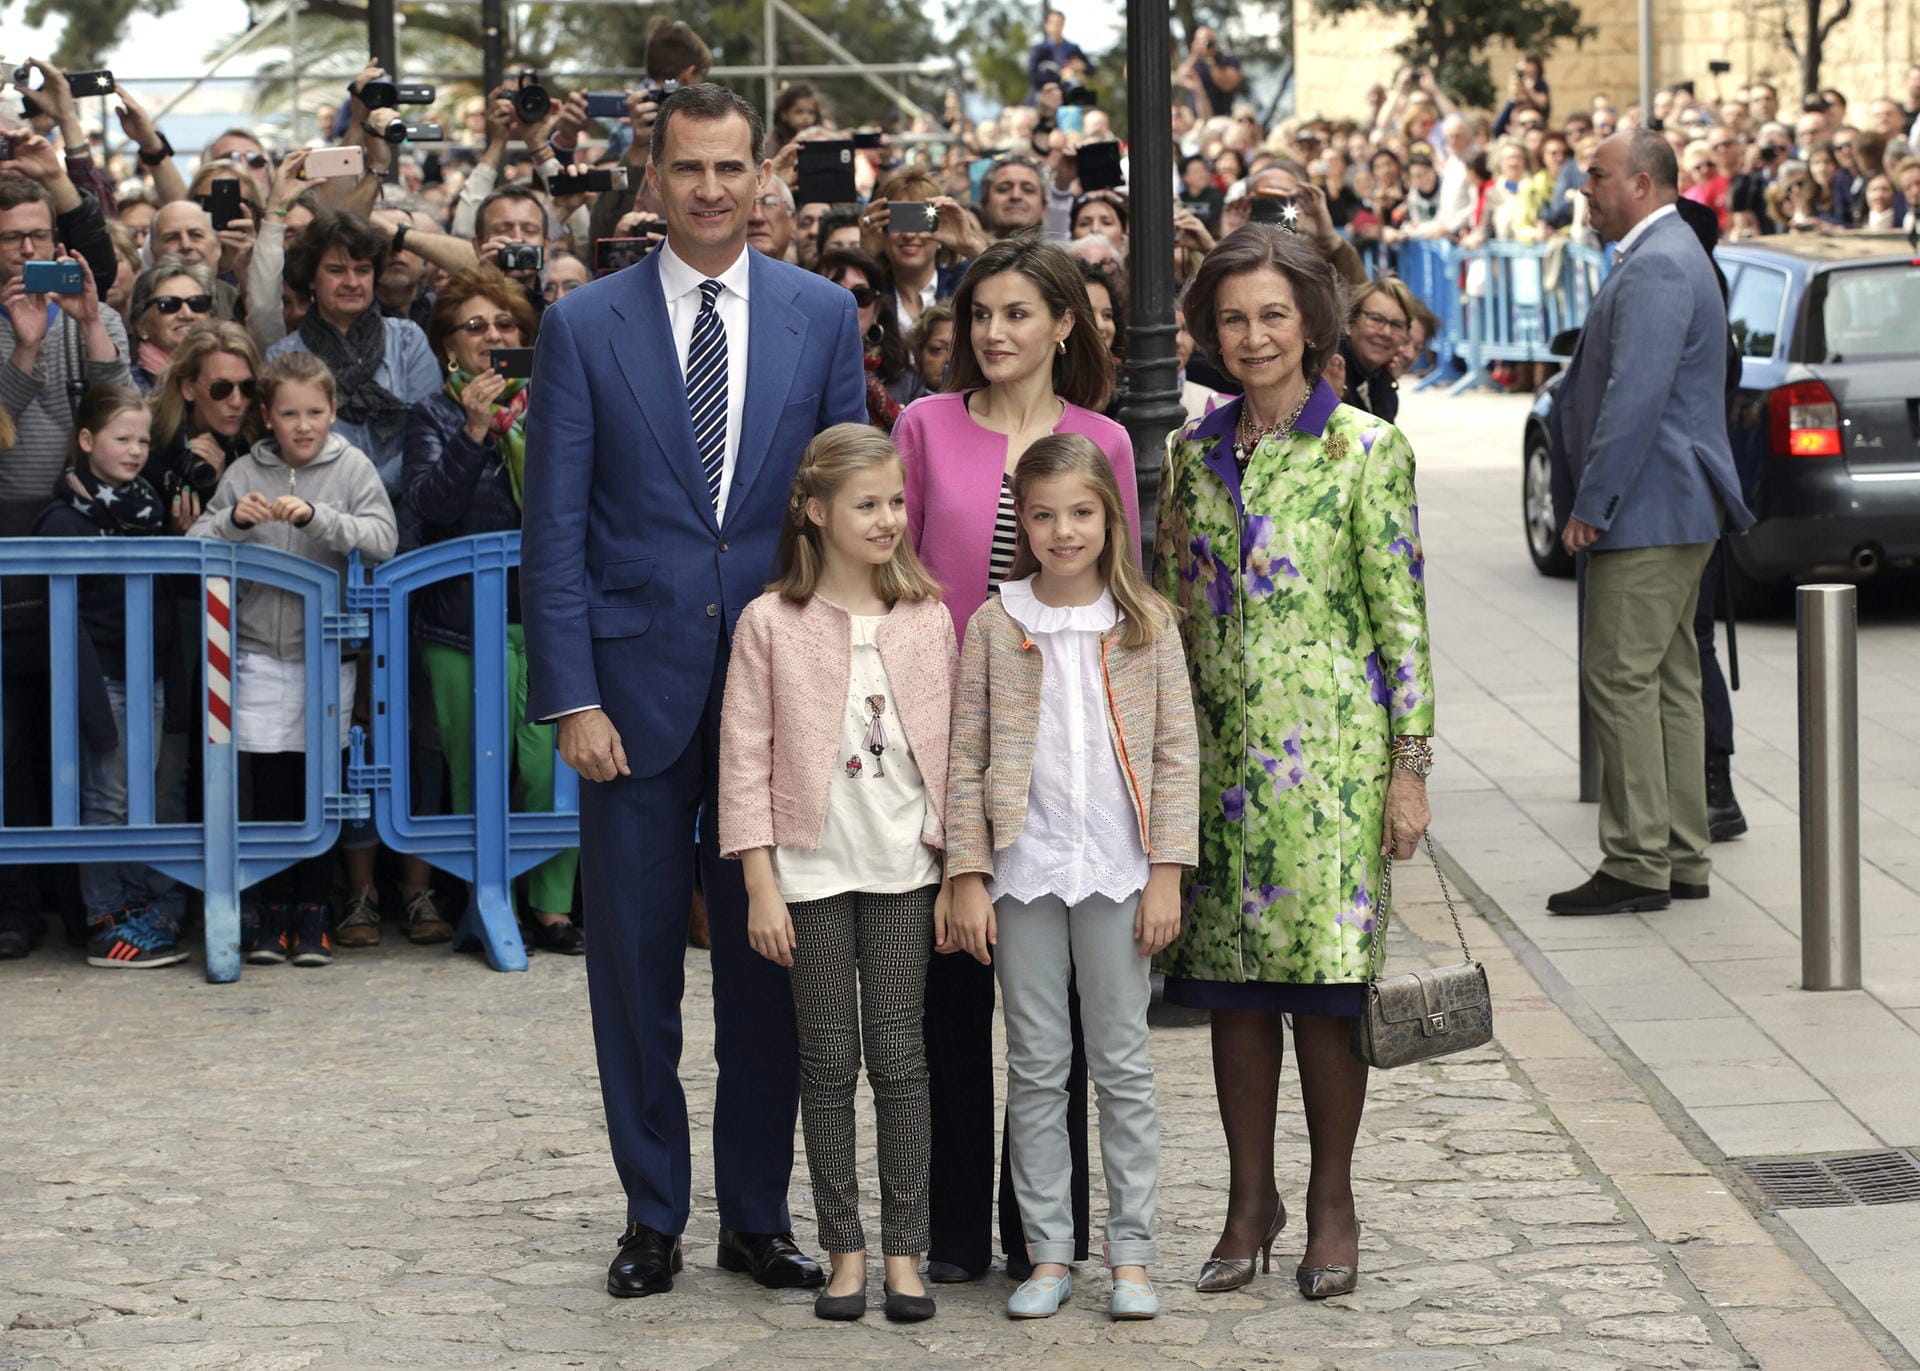 Bei ihrer Ankunft posieren Spaniens König Felipe VI, Königin Letizia (h.M.), ihre Töchter Leonor (v.l.) und Sofia (v.r.) und Felipes Mutter Sofia vor der mallorquinischen Kathedrale.